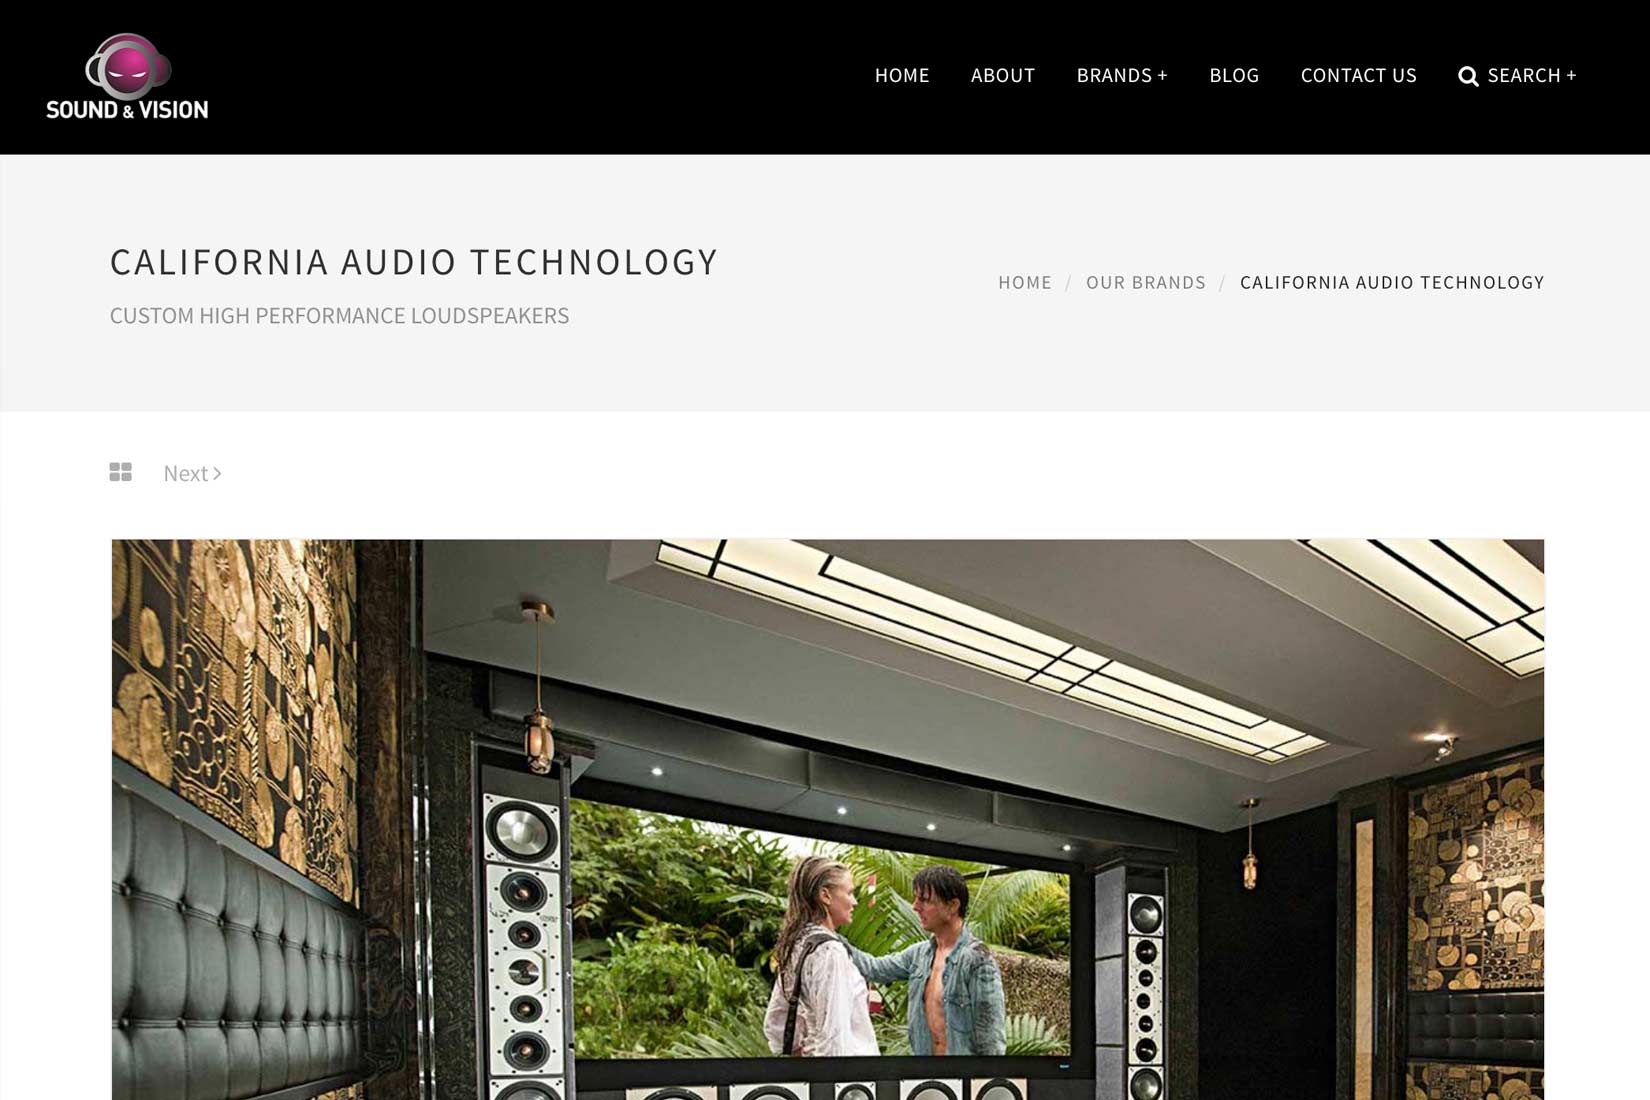 Sound & Vision India - Brand Page by Presto Web Design